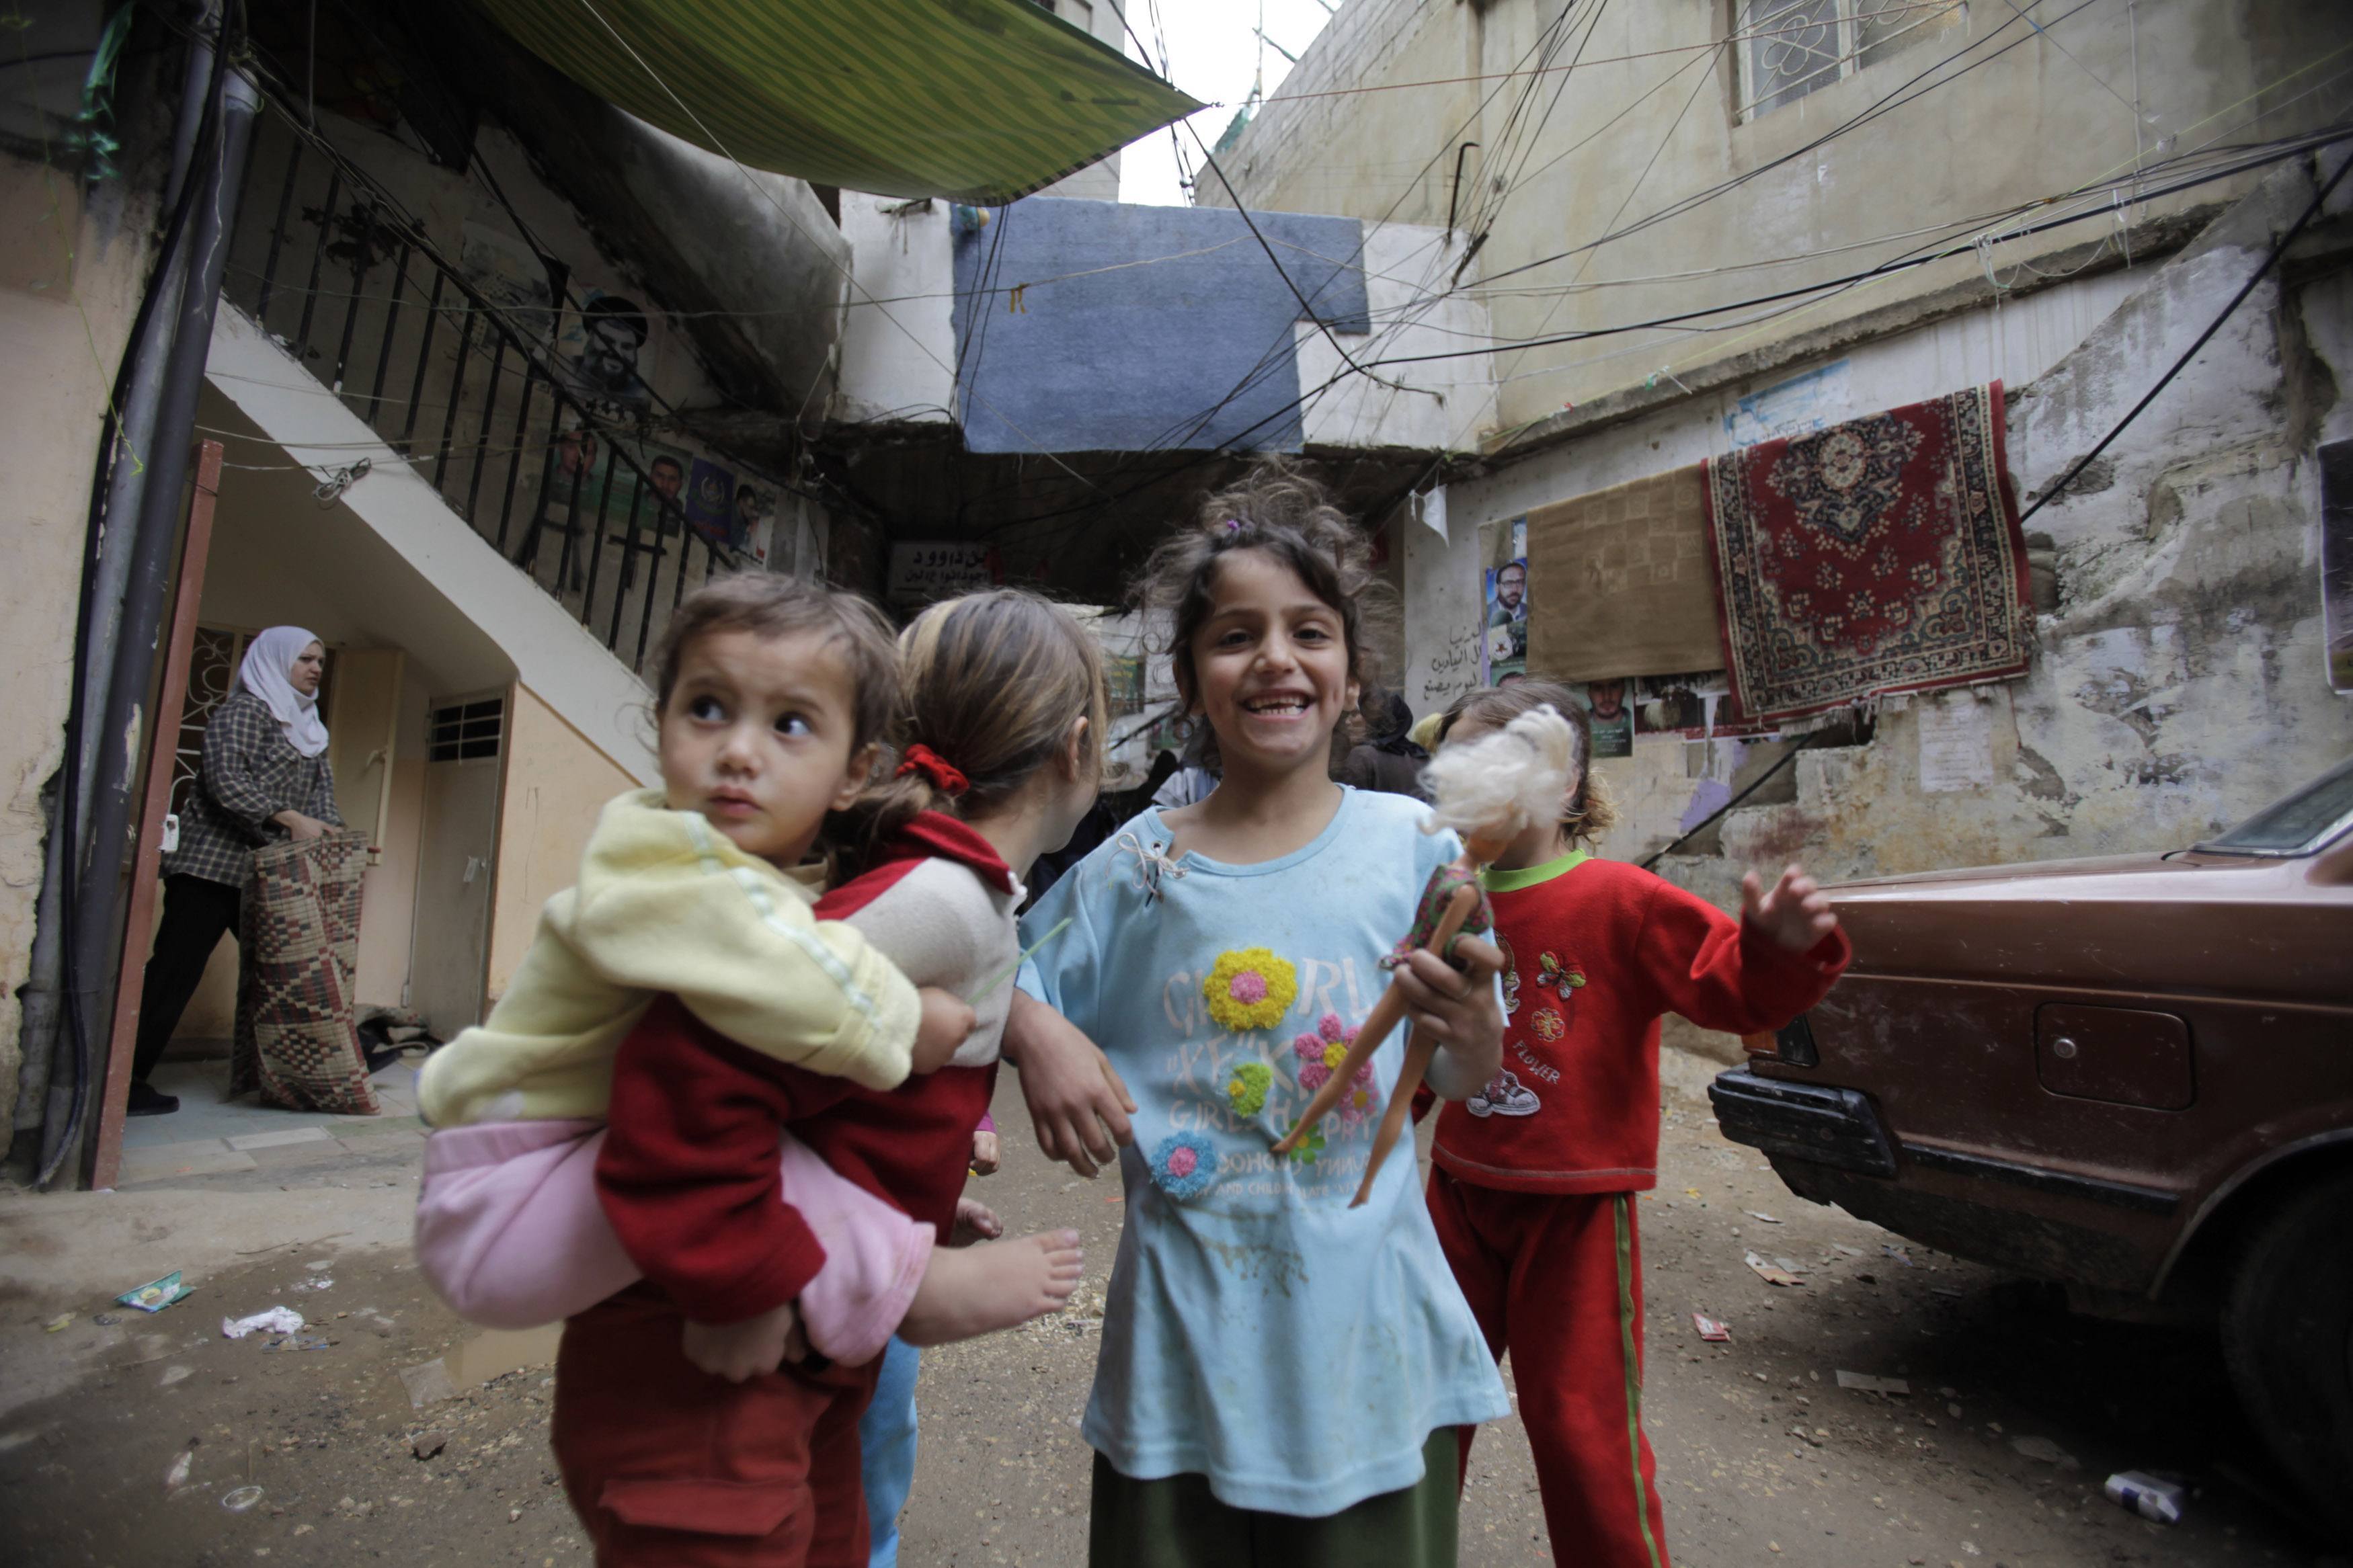 Μικροί παλαιστίνιοι χαμογελούν στον φακό. ΦΩΤΟ REUTERS